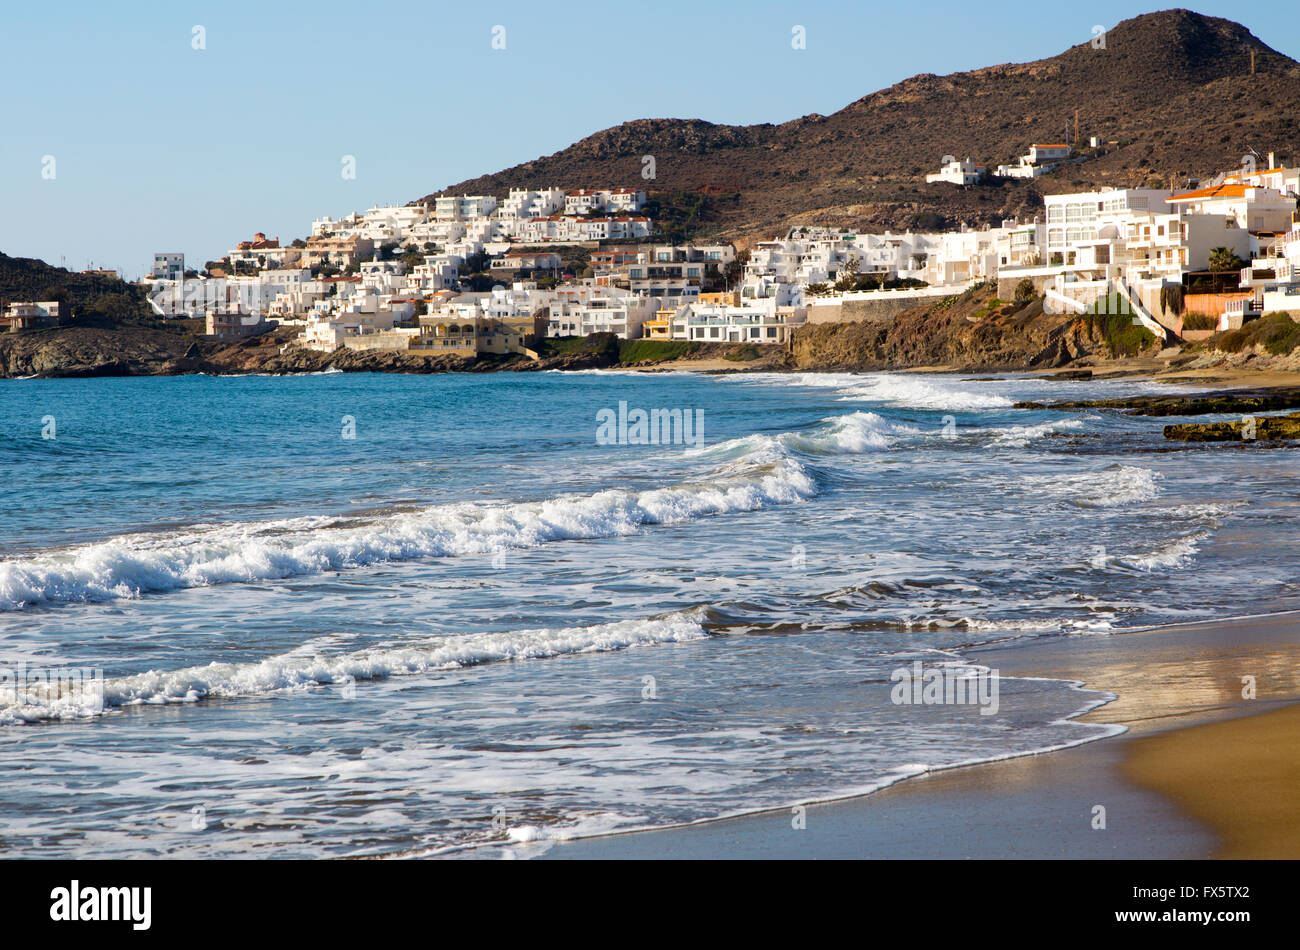 Beach and waves at San José, Cabo de Gata natural park, Almeria, Spain Stock Photo